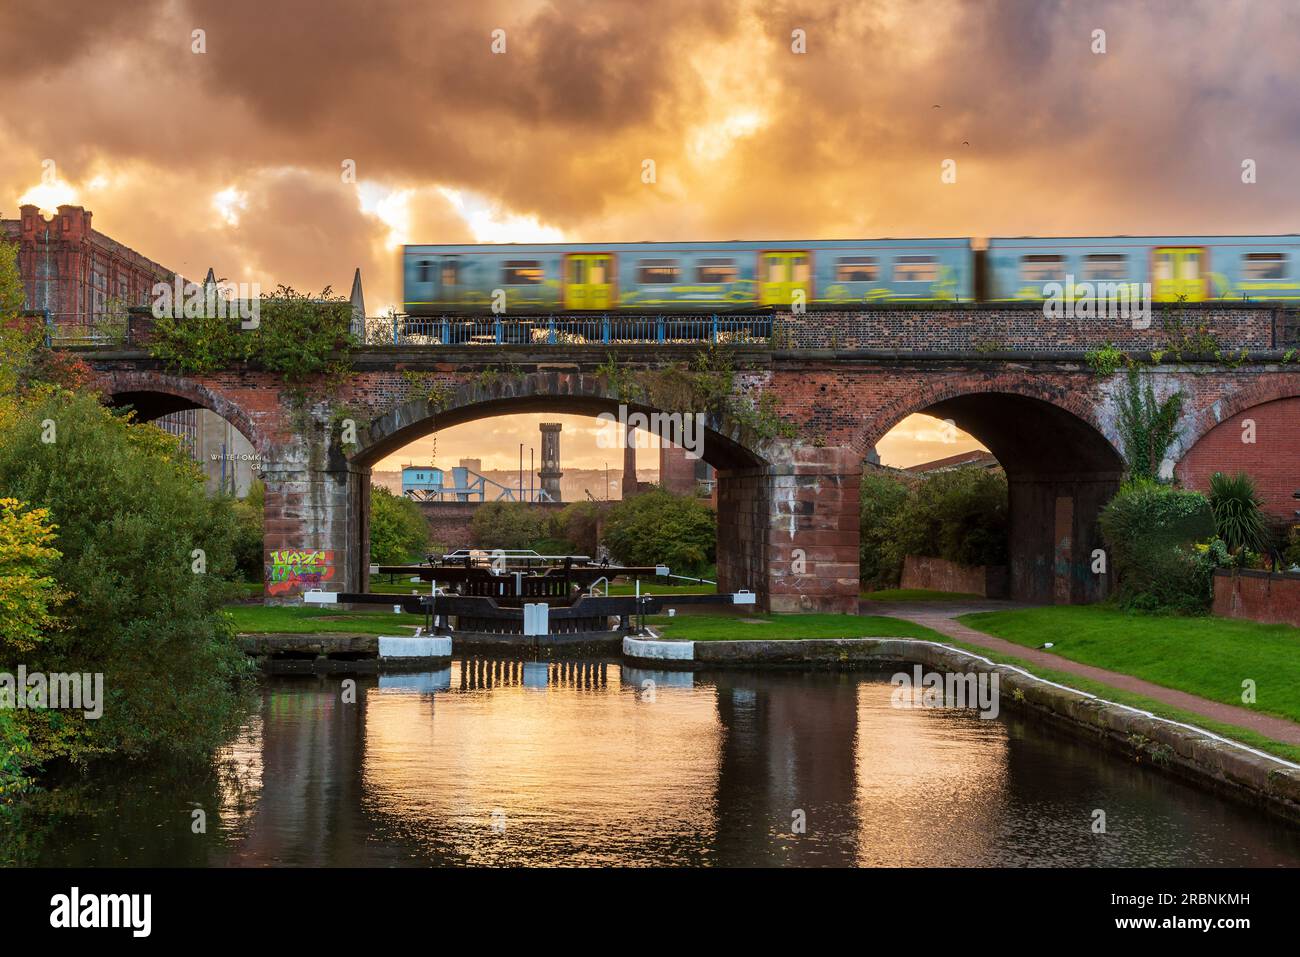 Die letzte Schleuse des Leeds Liverpool-Kanals, wenn er die Docks von Liverpool erreicht, mit dem Merseyrail-Zug, der über das Viadukt fährt. Stockfoto